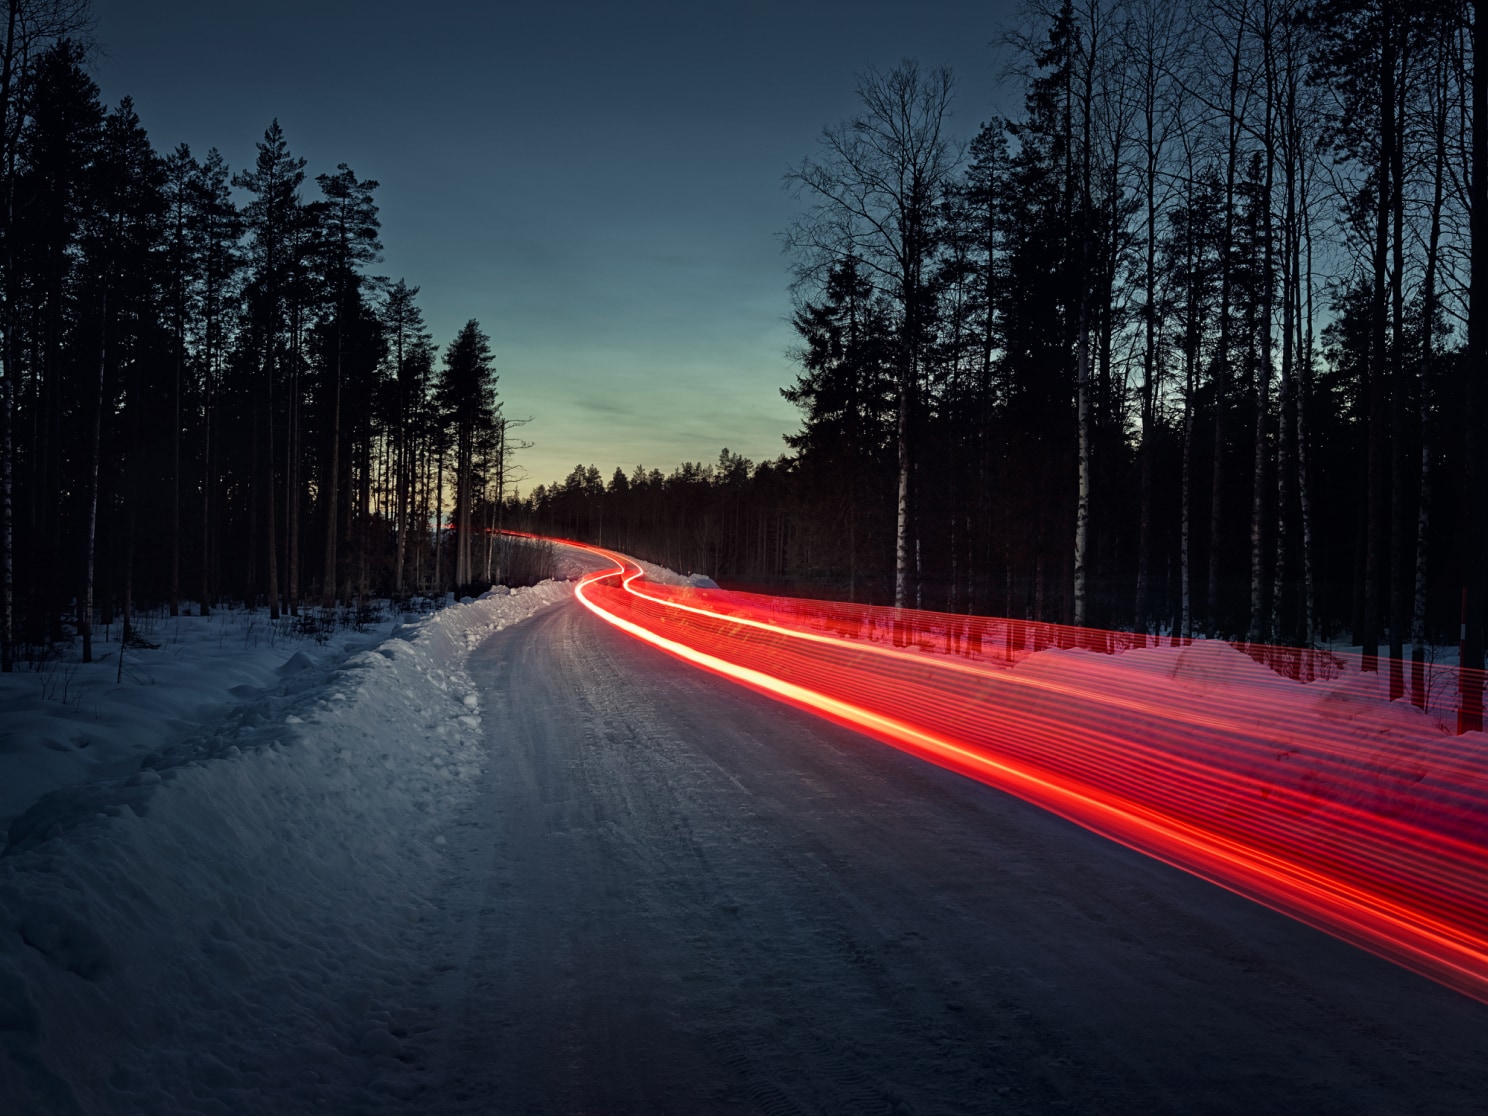 Késleltetett felvétel egy jeges úton lévő nyomról, amely piros hátsó lámpának látszik.